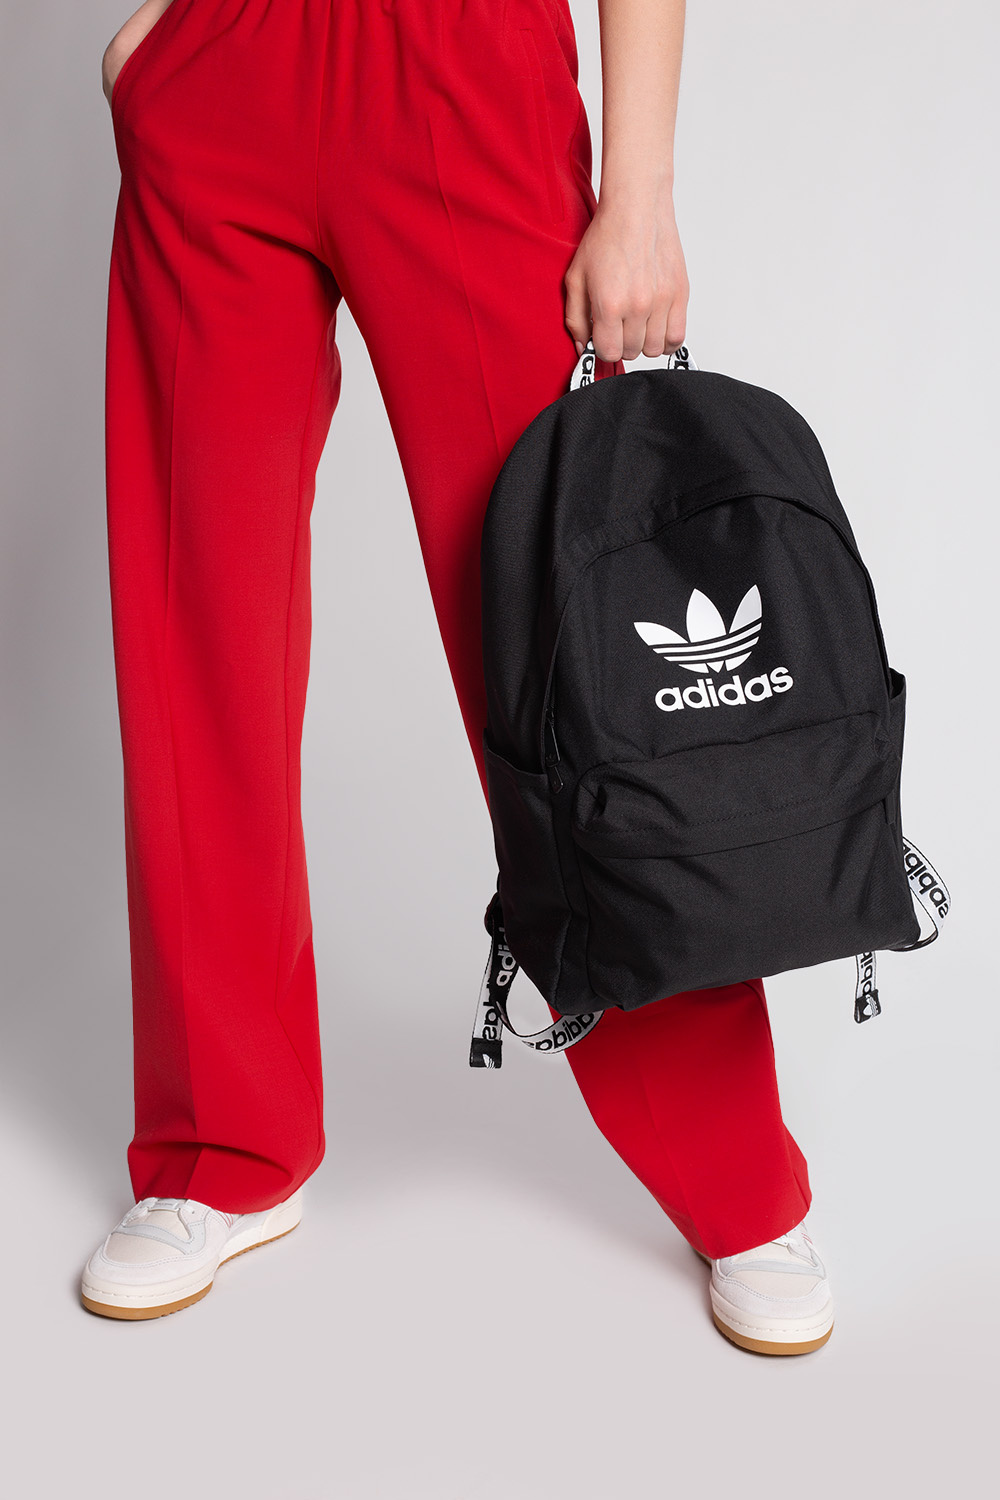 Adidas Backpack Girl Black | vlr.eng.br